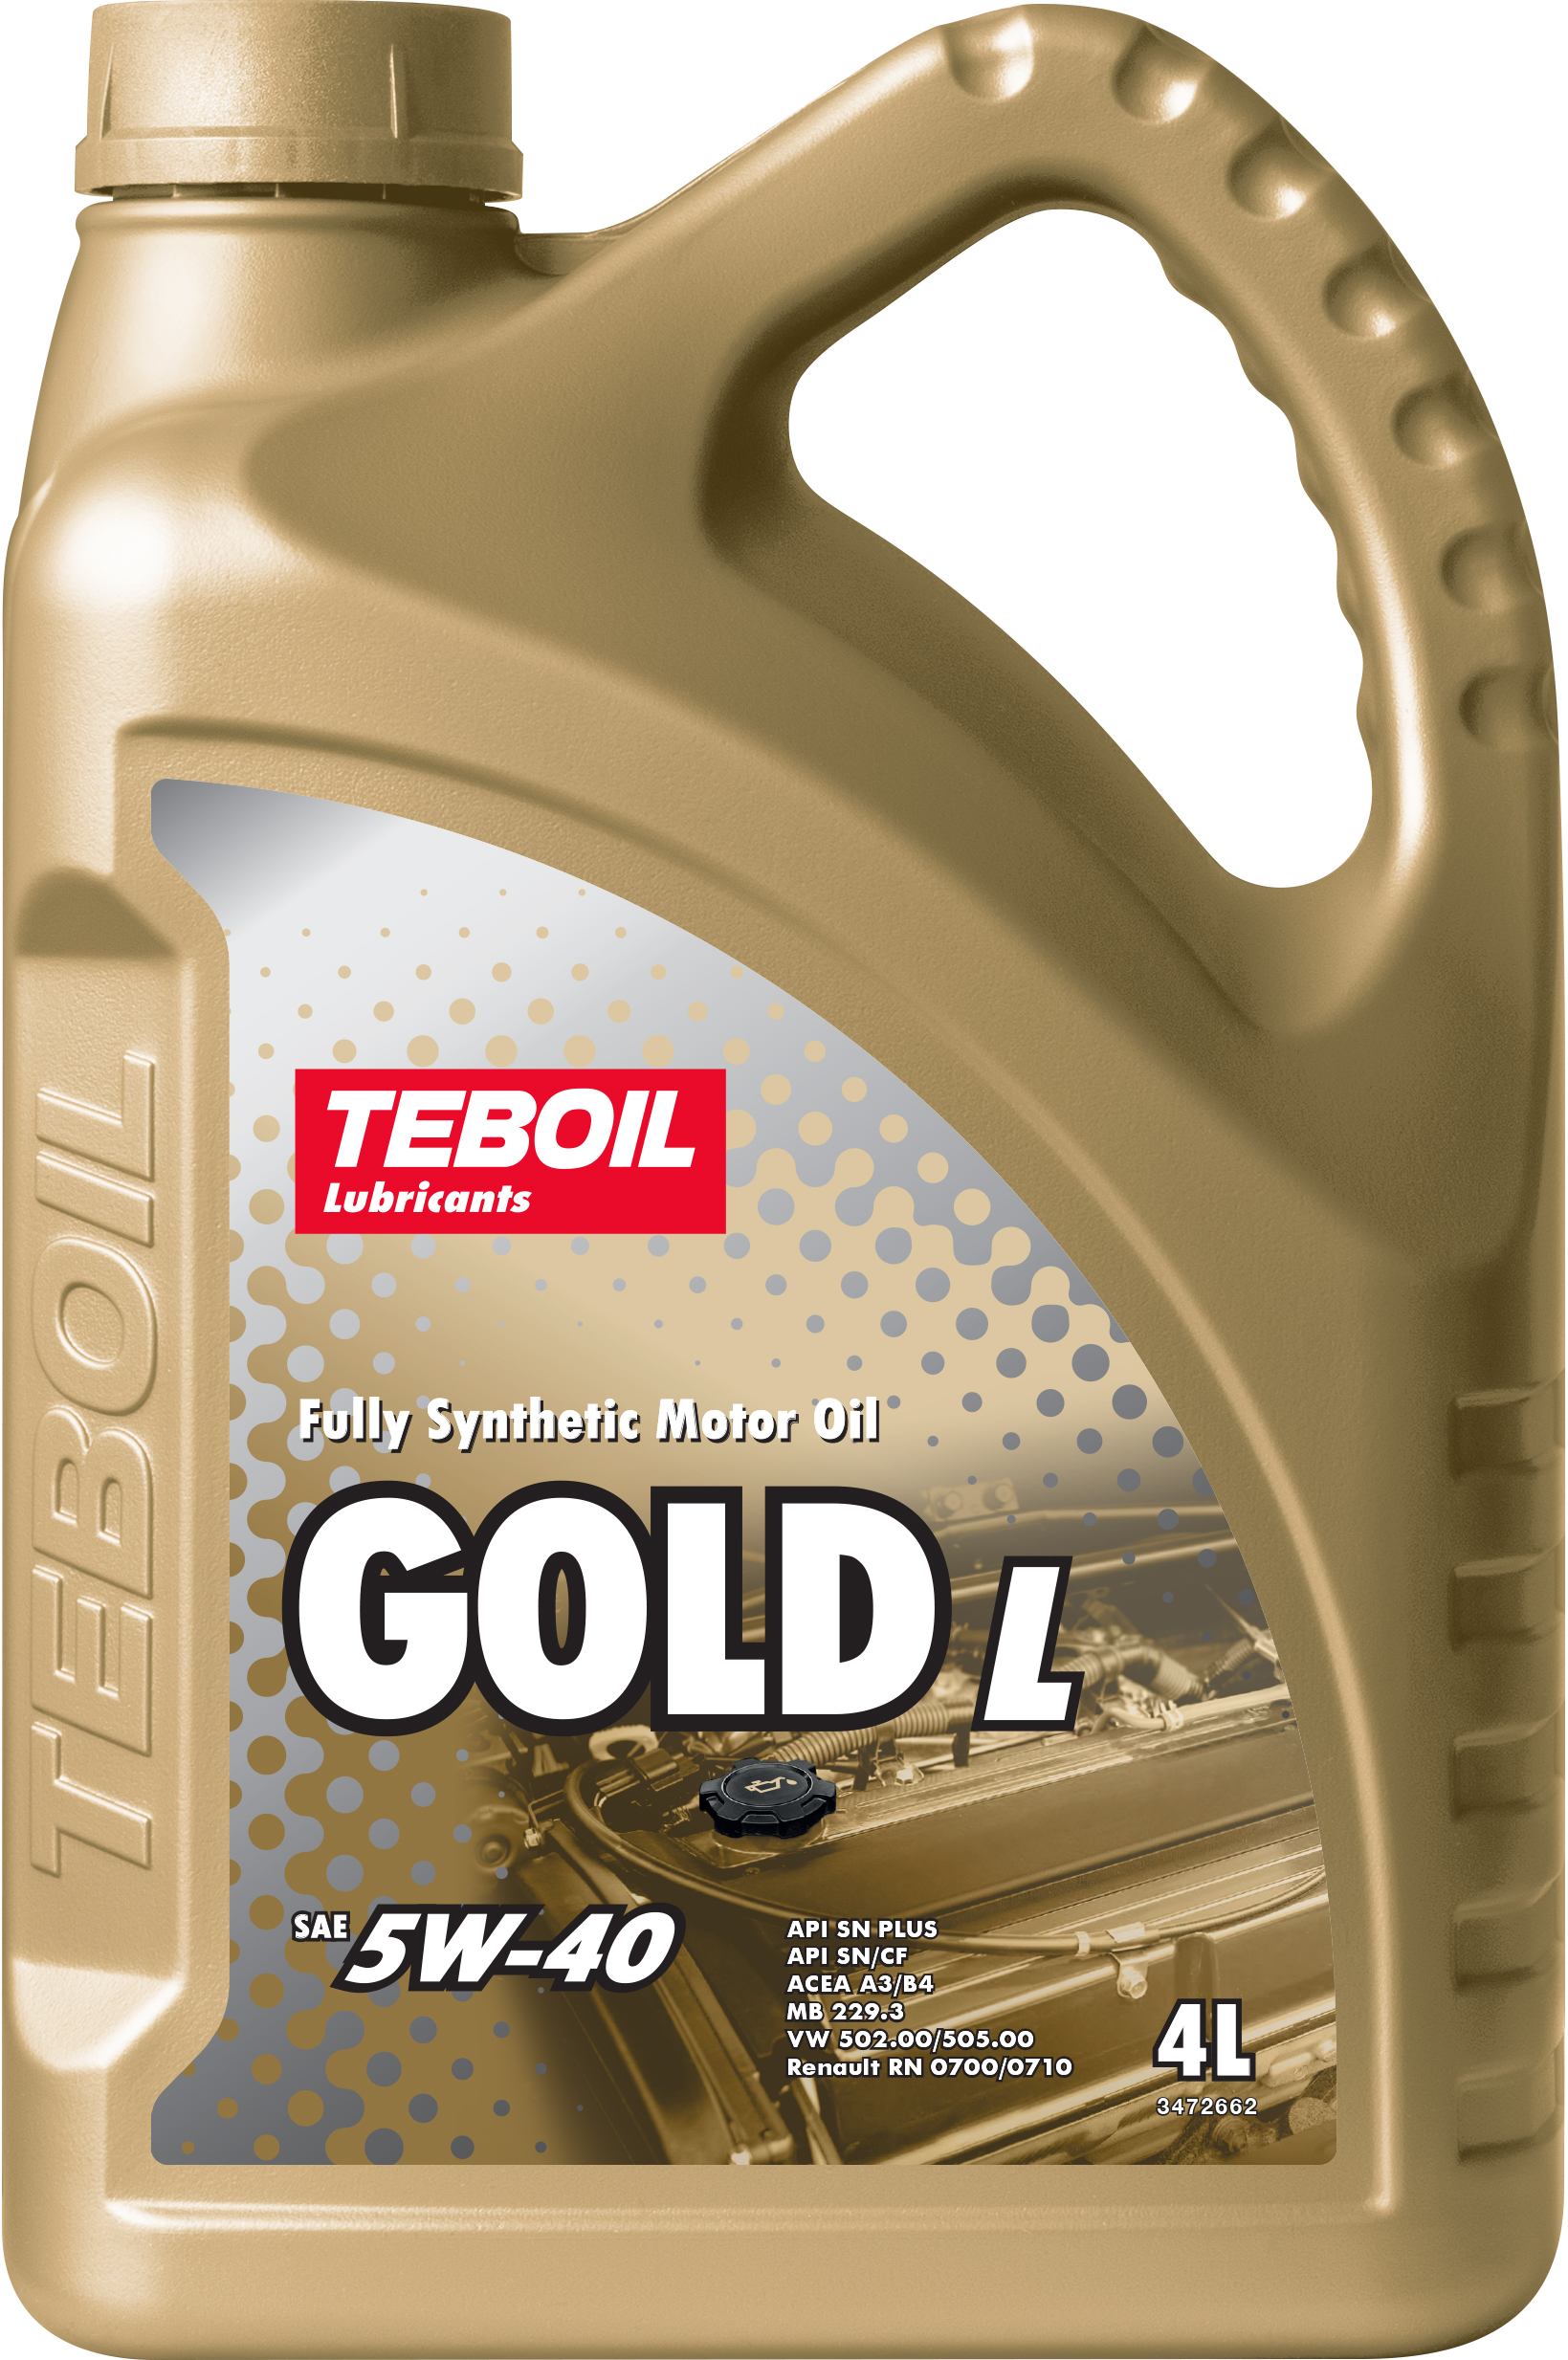 5w-40 Gold l 4л (синт. мотор. масло) - TEBOIL 3475041